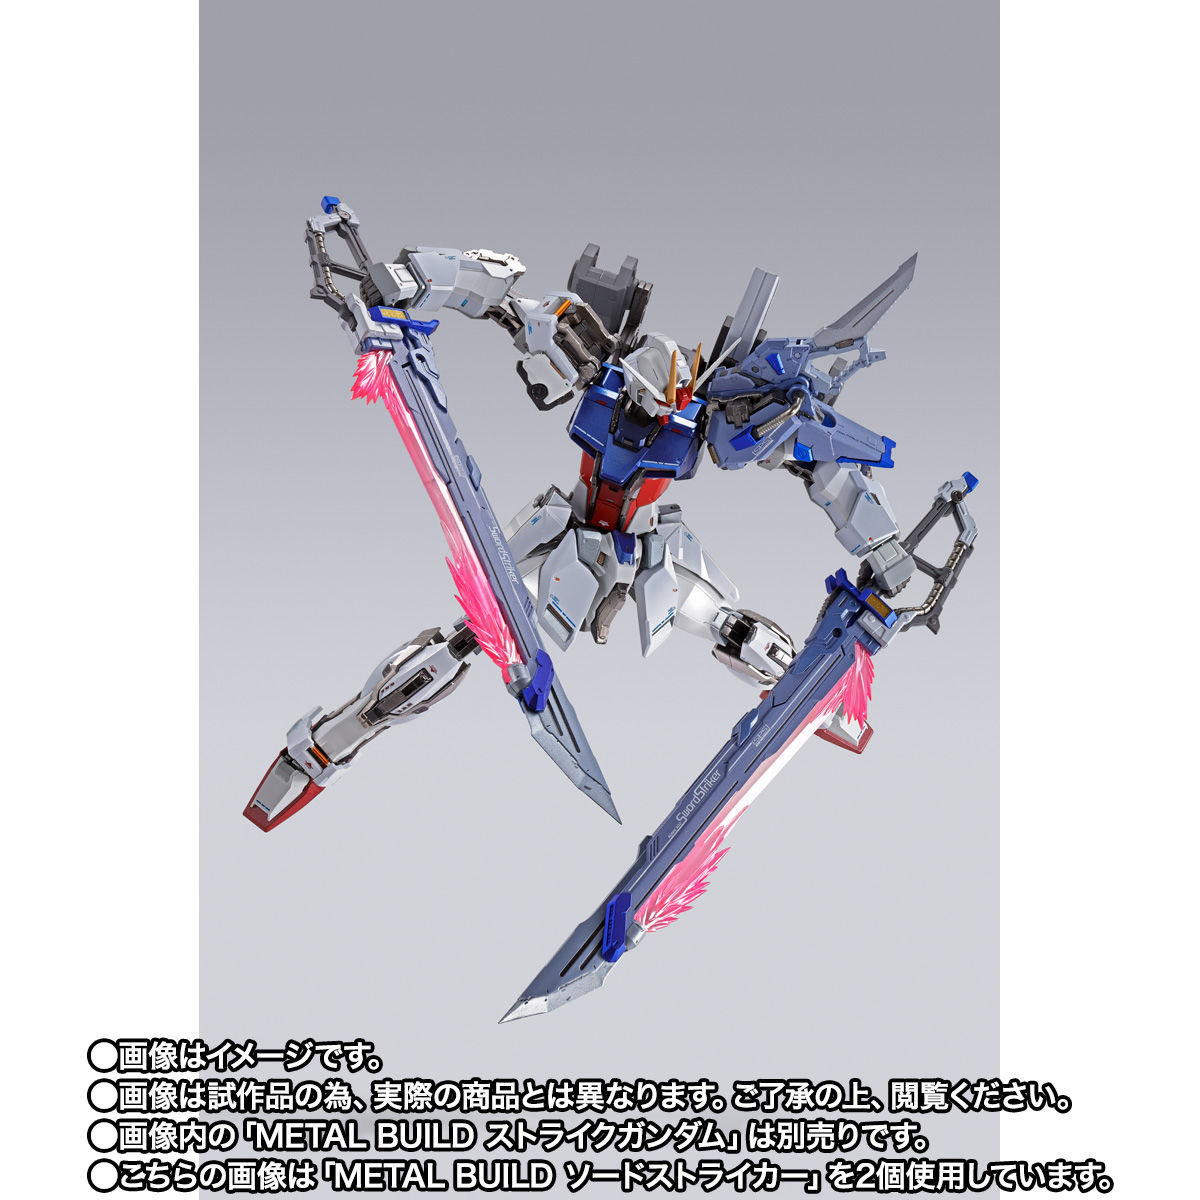 【限定販売】METAL BUILD『ソードストライカー』機動戦士ガンダムSEED 可動フィギュア-006